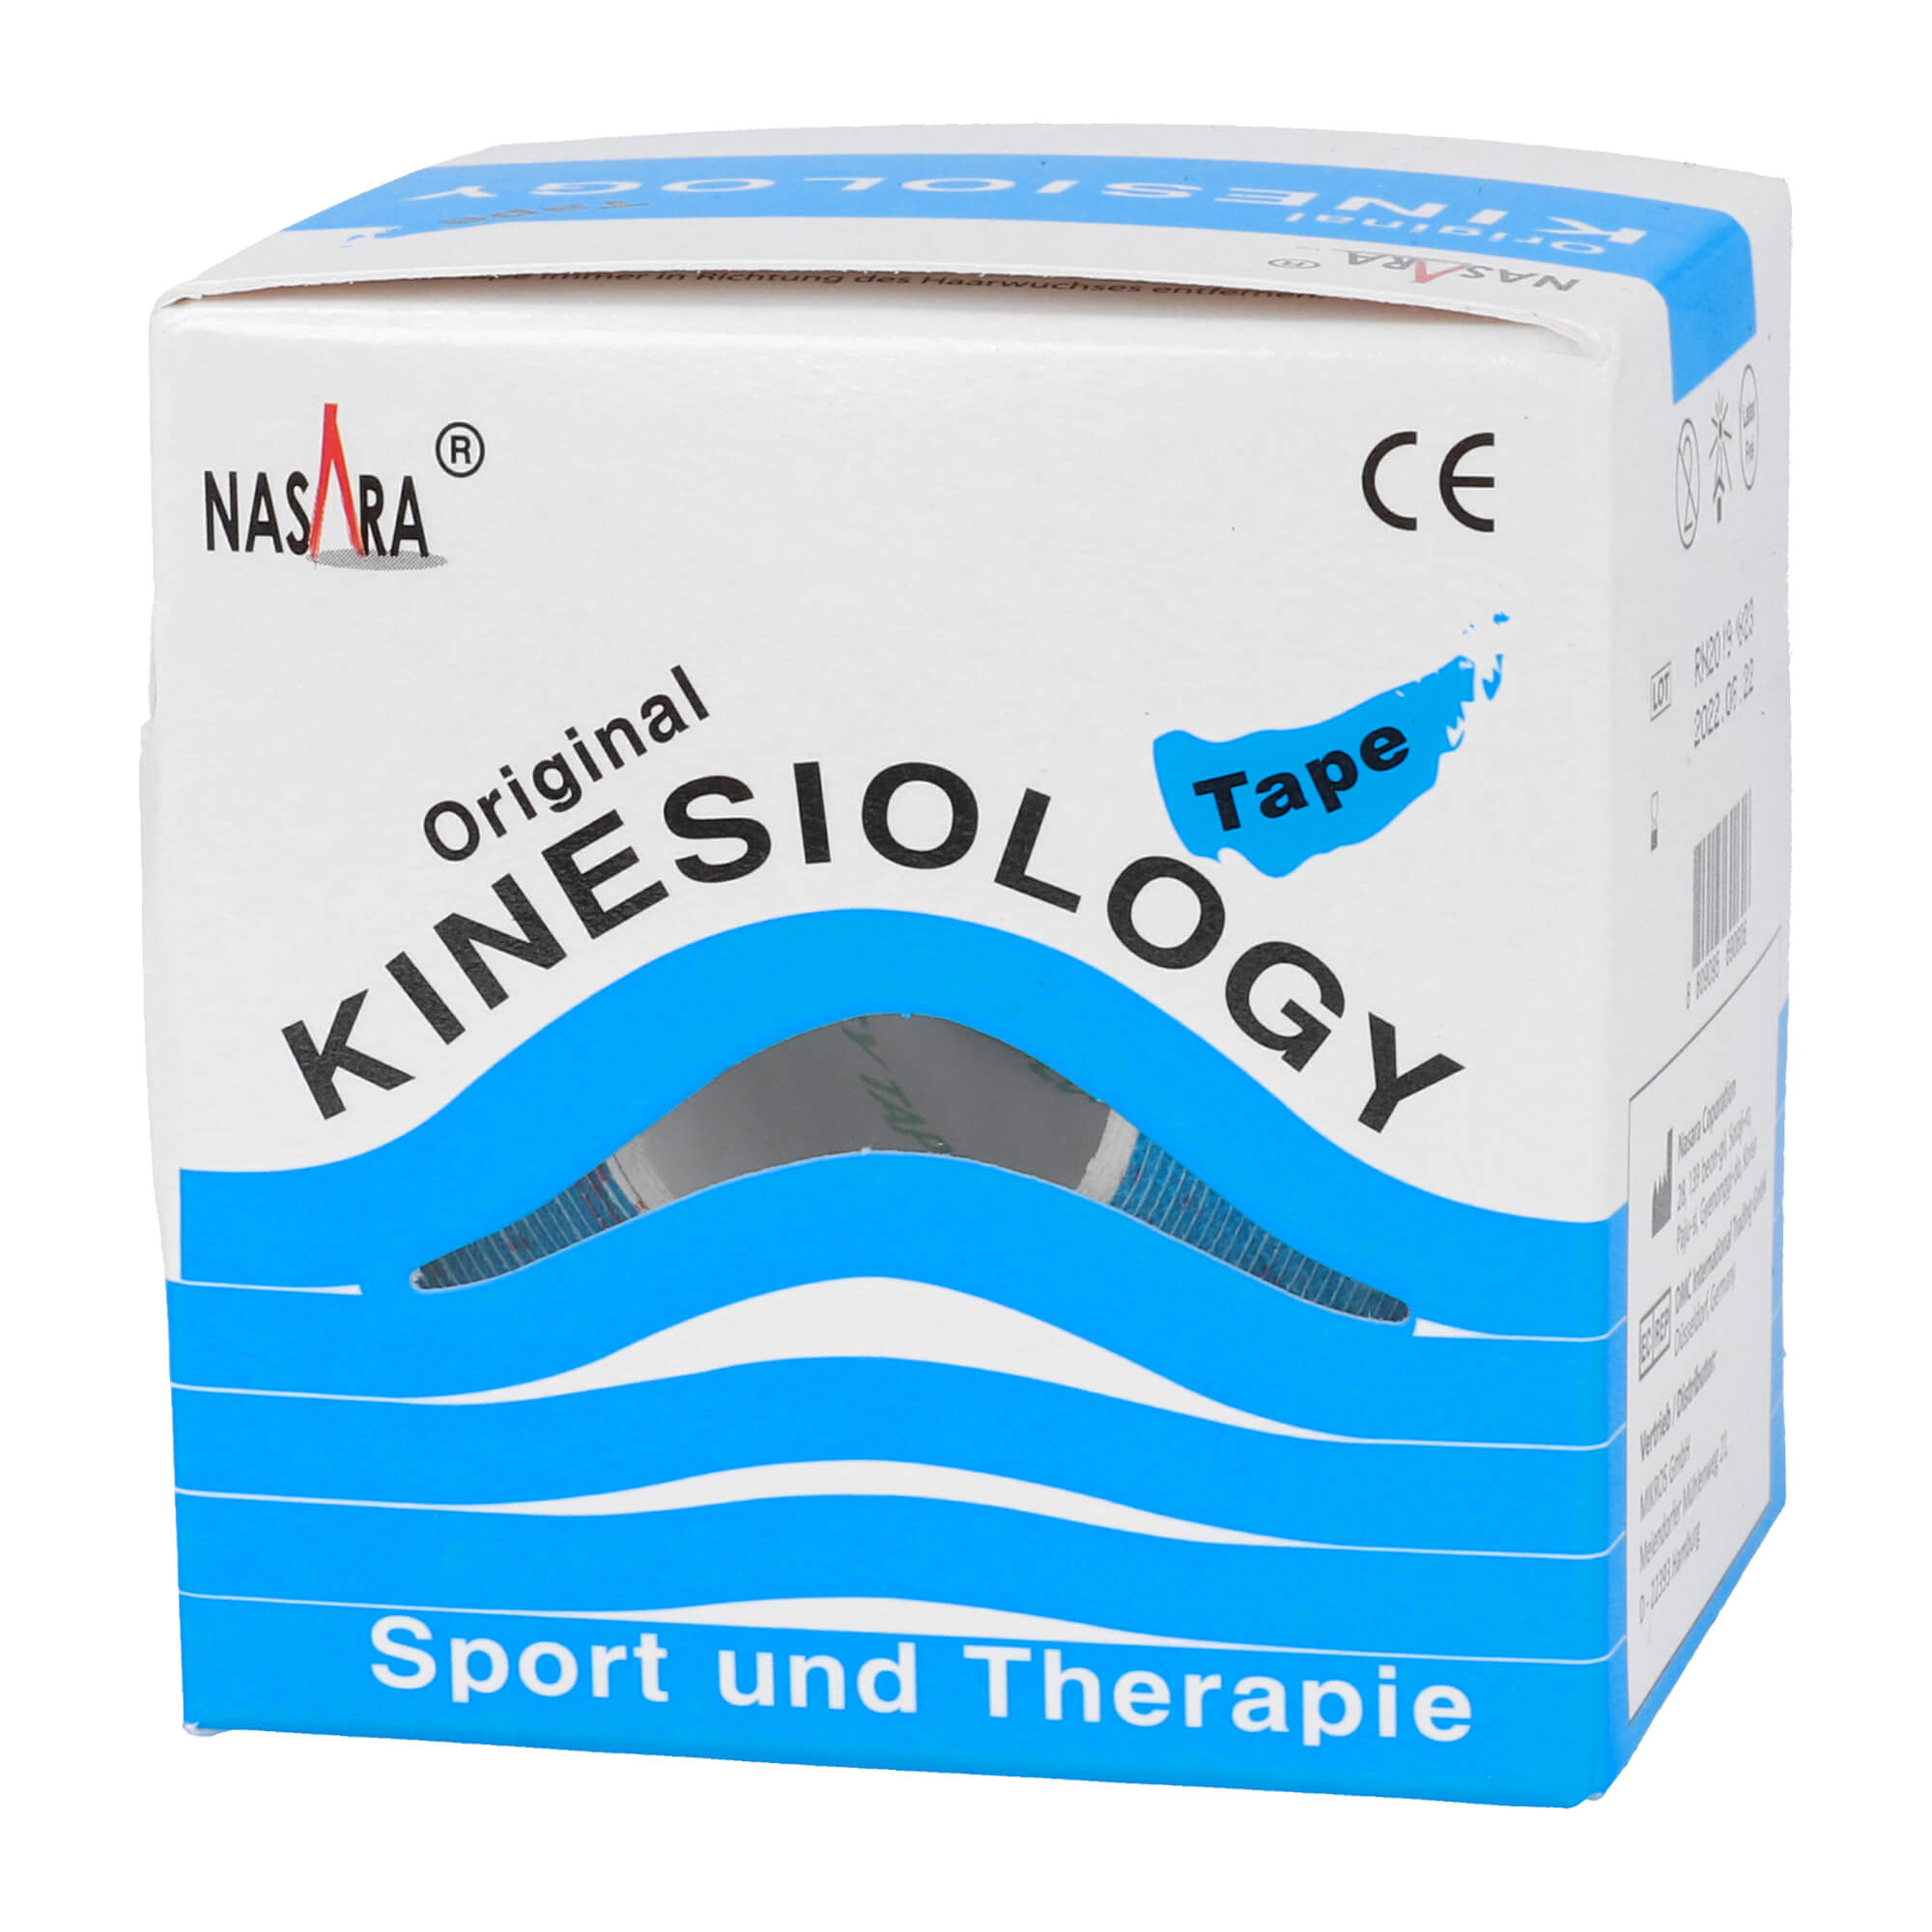 Kinesiology Tape für Sport und Therapie. Farbe: blau.